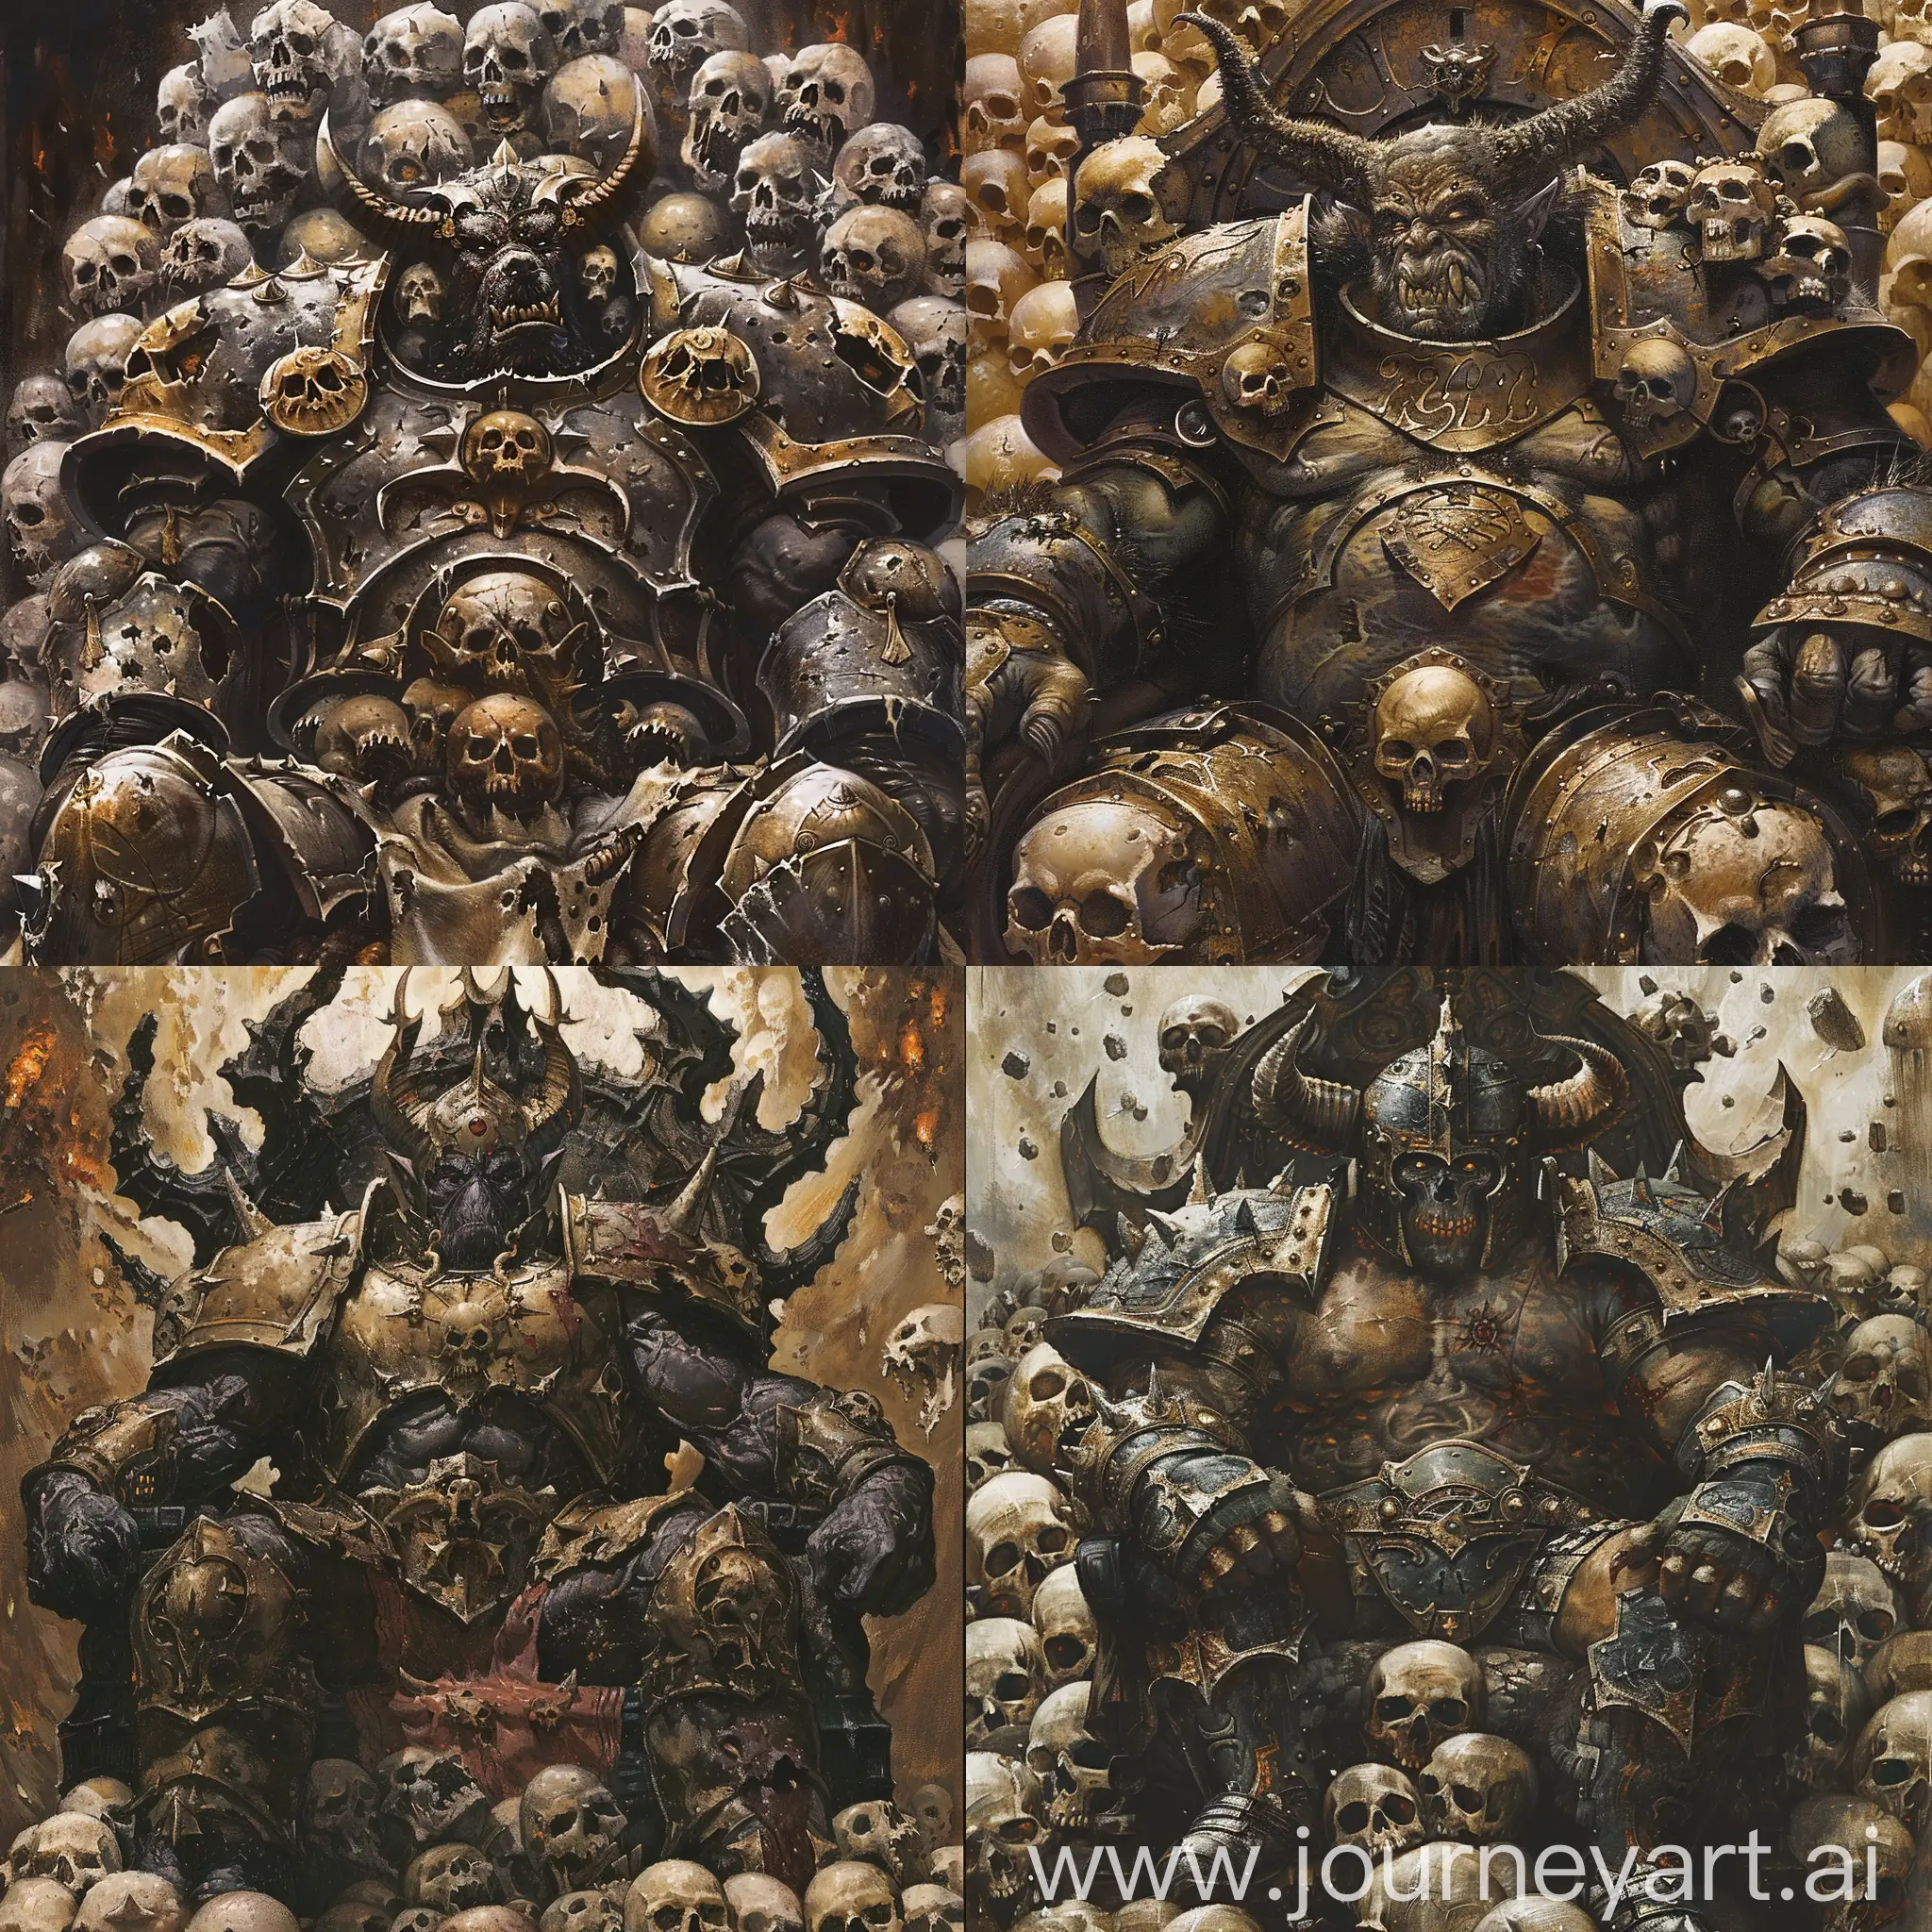 Colossal-Khorne-Blood-God-on-Throne-of-Skulls